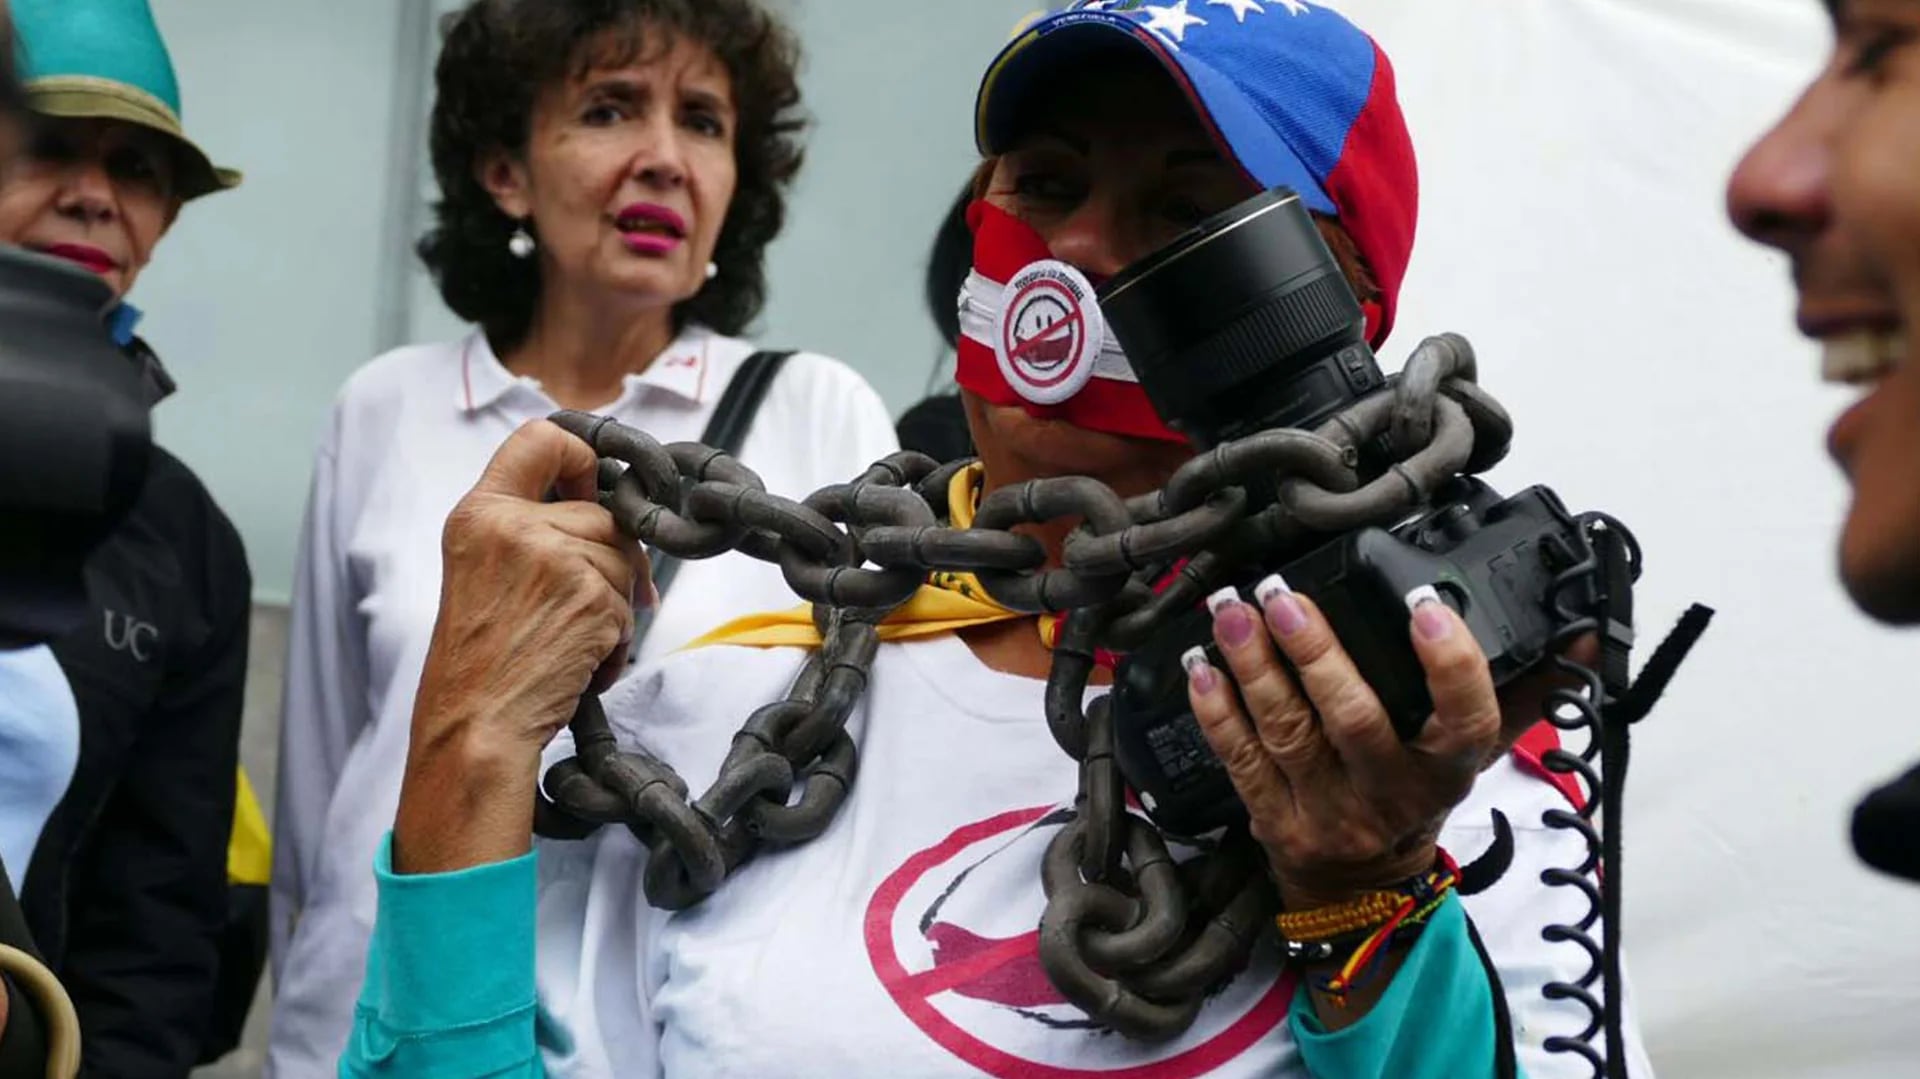 La prensa en Venezuela atraviesa uno de los peores momentos de su historia (La Patilla)